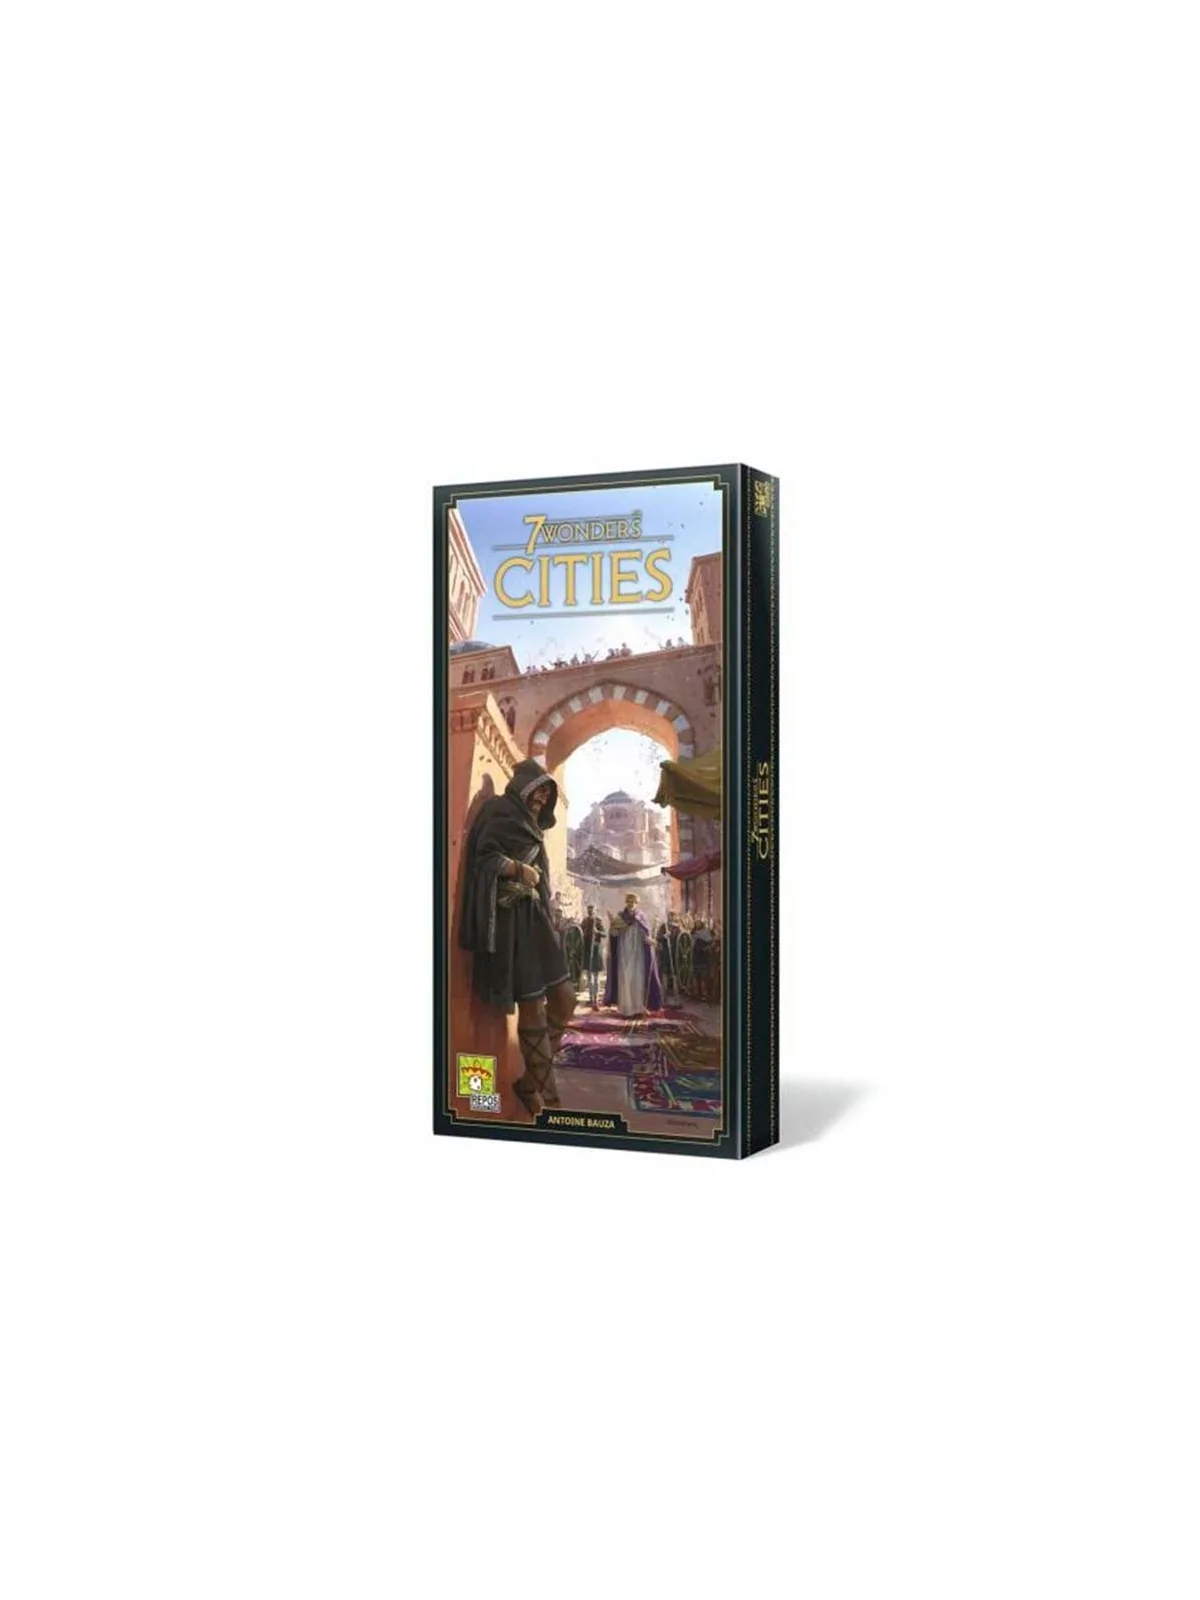 Comprar 7 Wonders: Cities - Nueva Edición barato al mejor precio 22,49